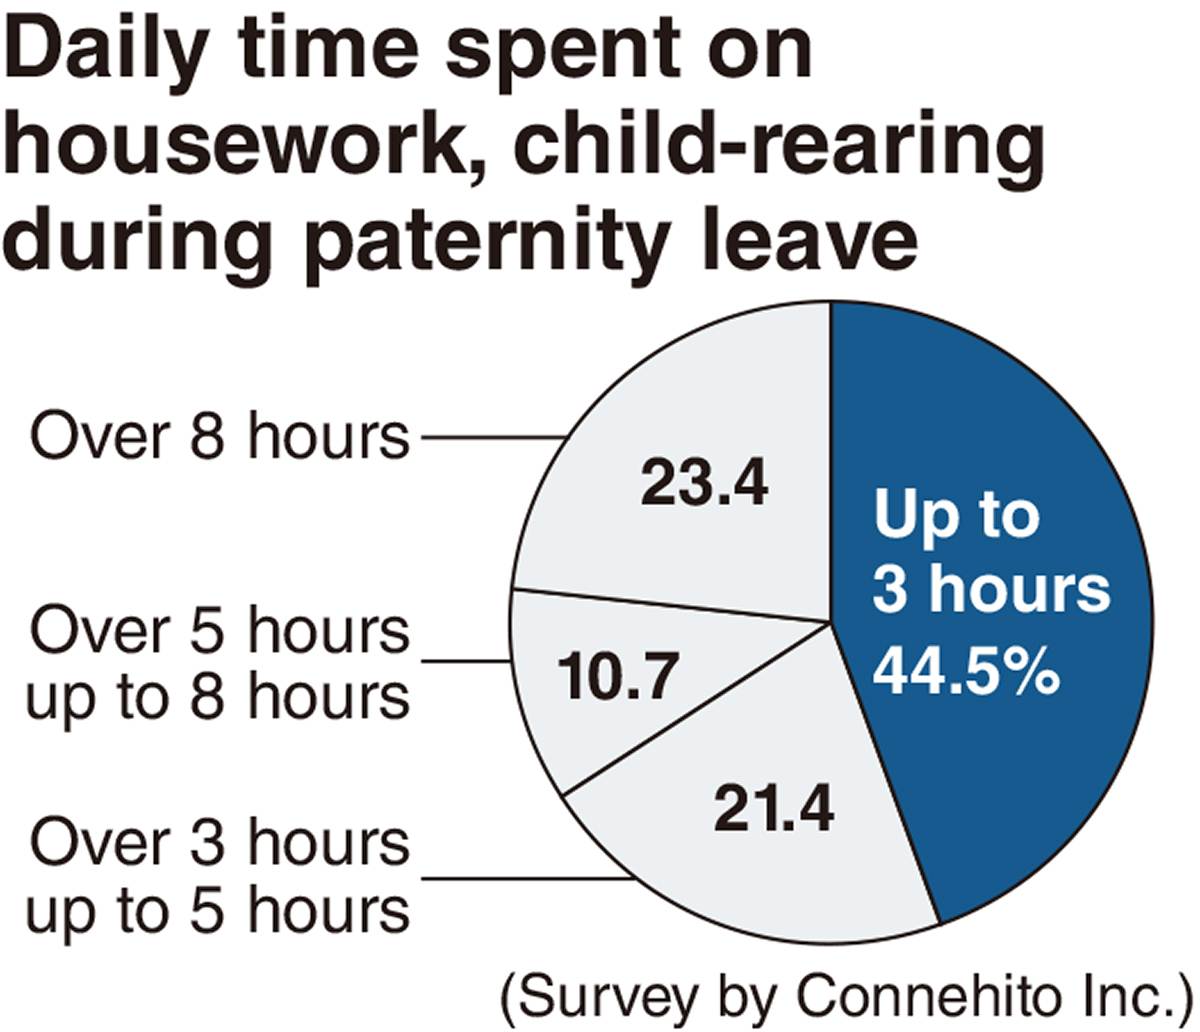 男性の育児休職を奨励する日本企業